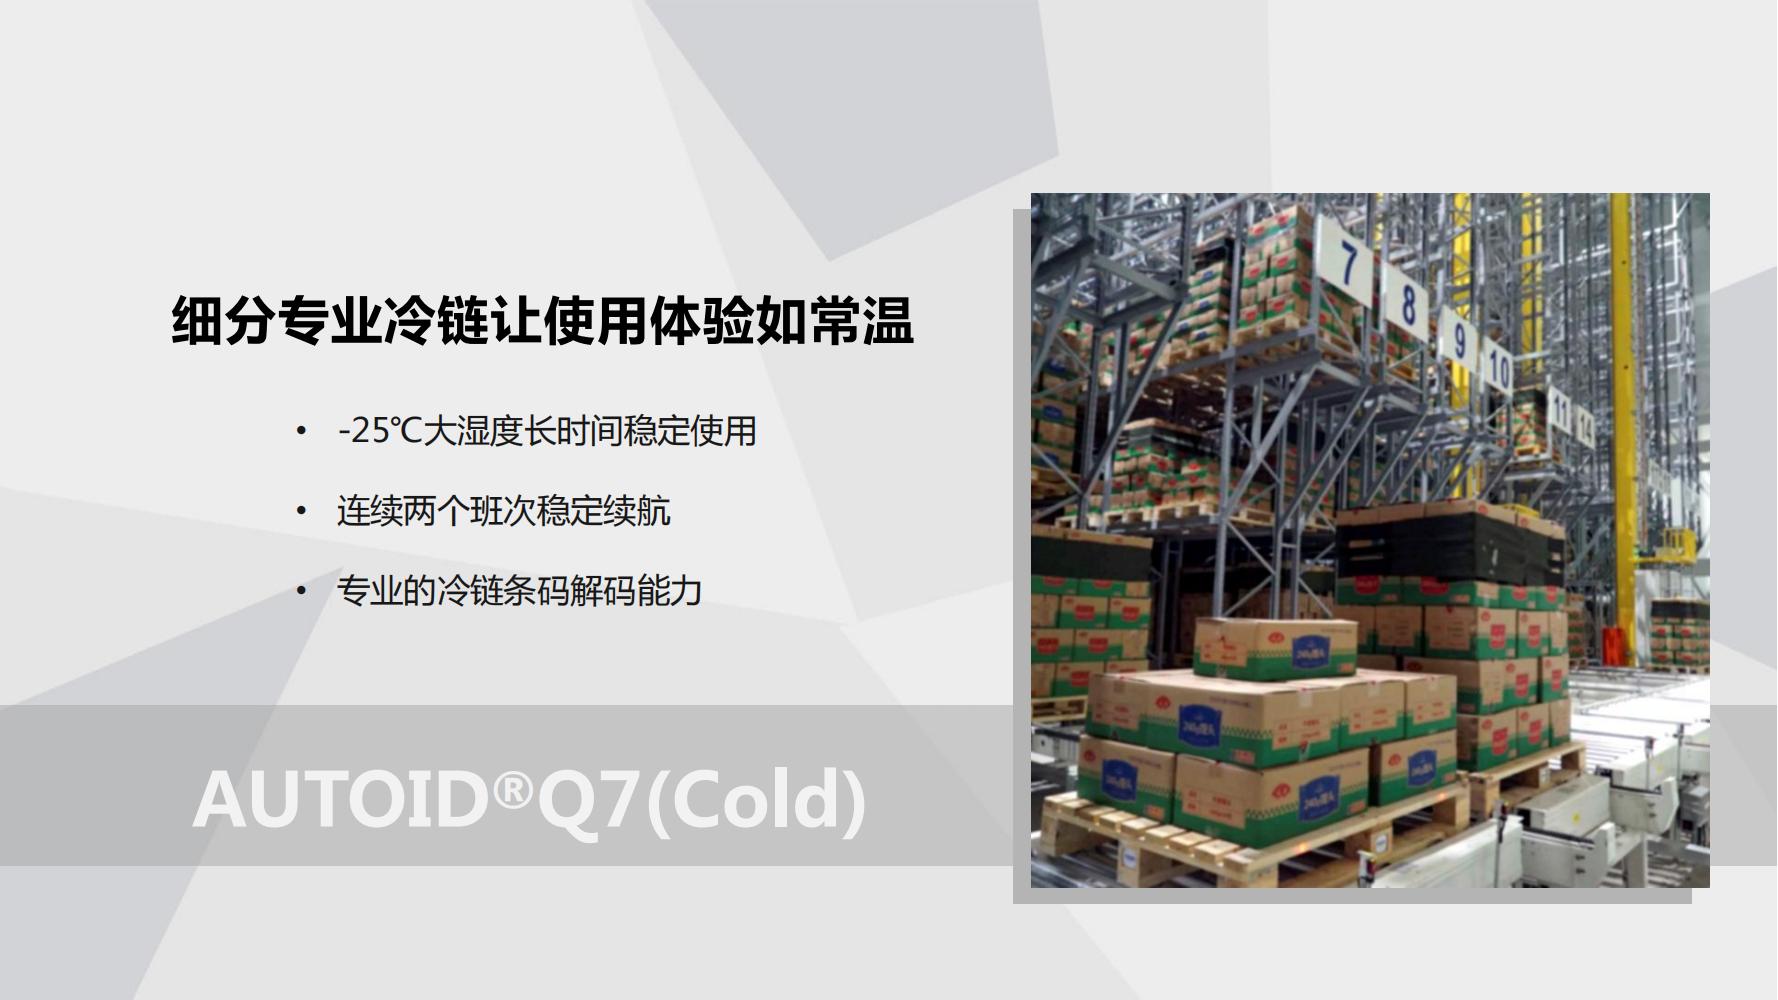 AUTOIDQ7(Cold) 产品PPT介绍V1.0(1)_01.jpg